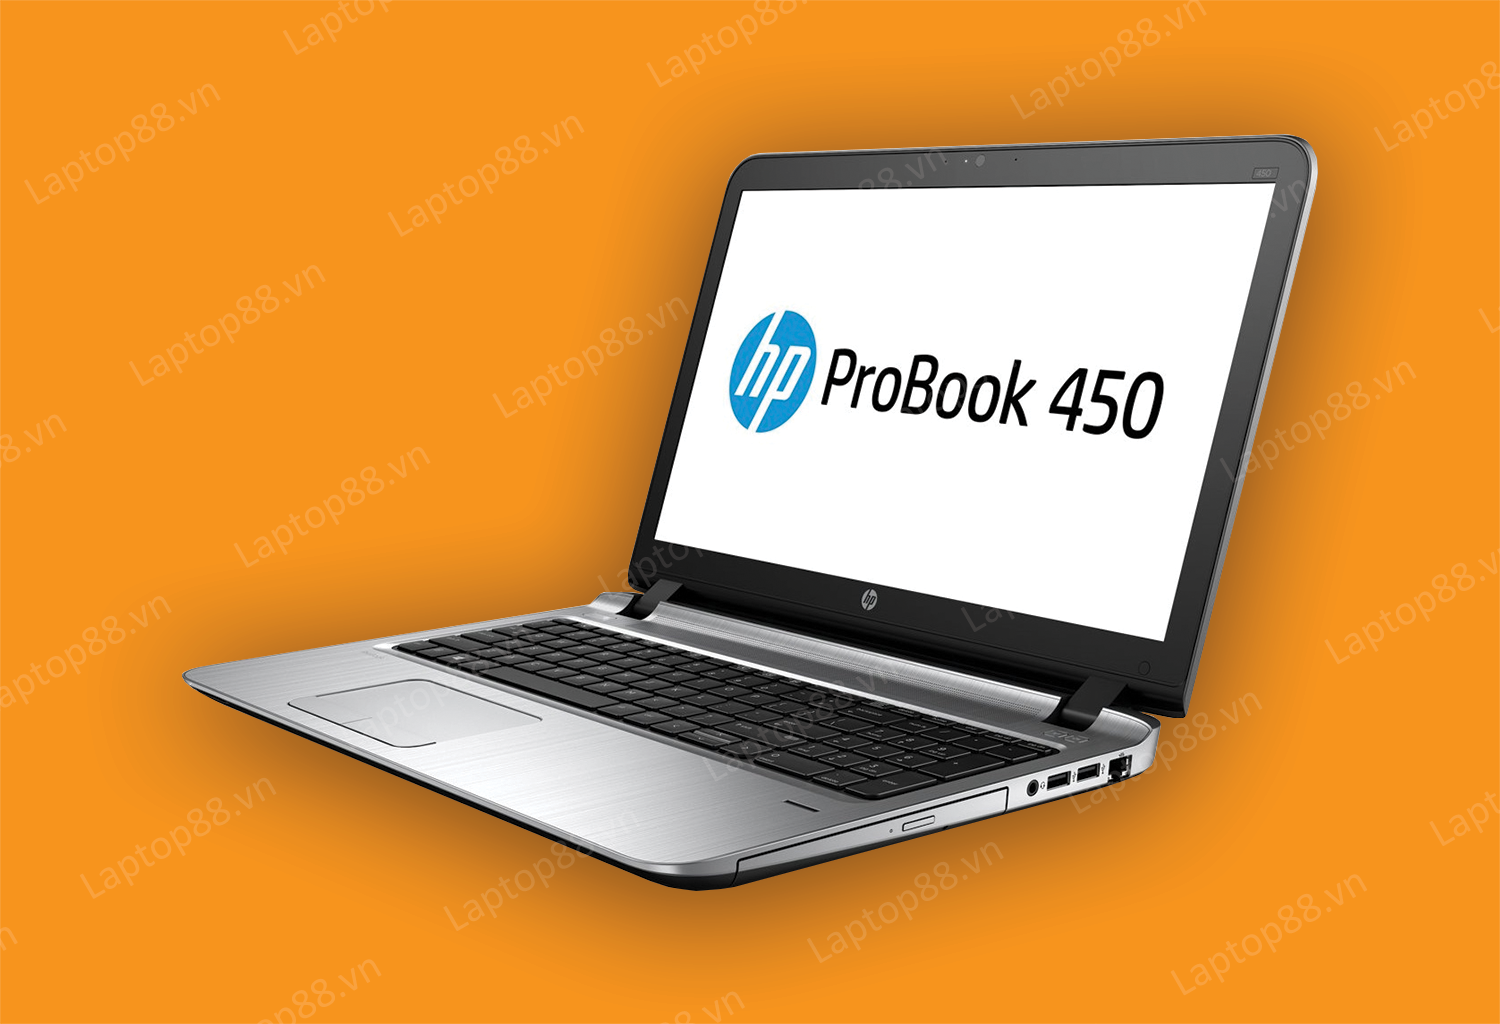 Những ưu, nhược điểm của dòng máy HP Probook